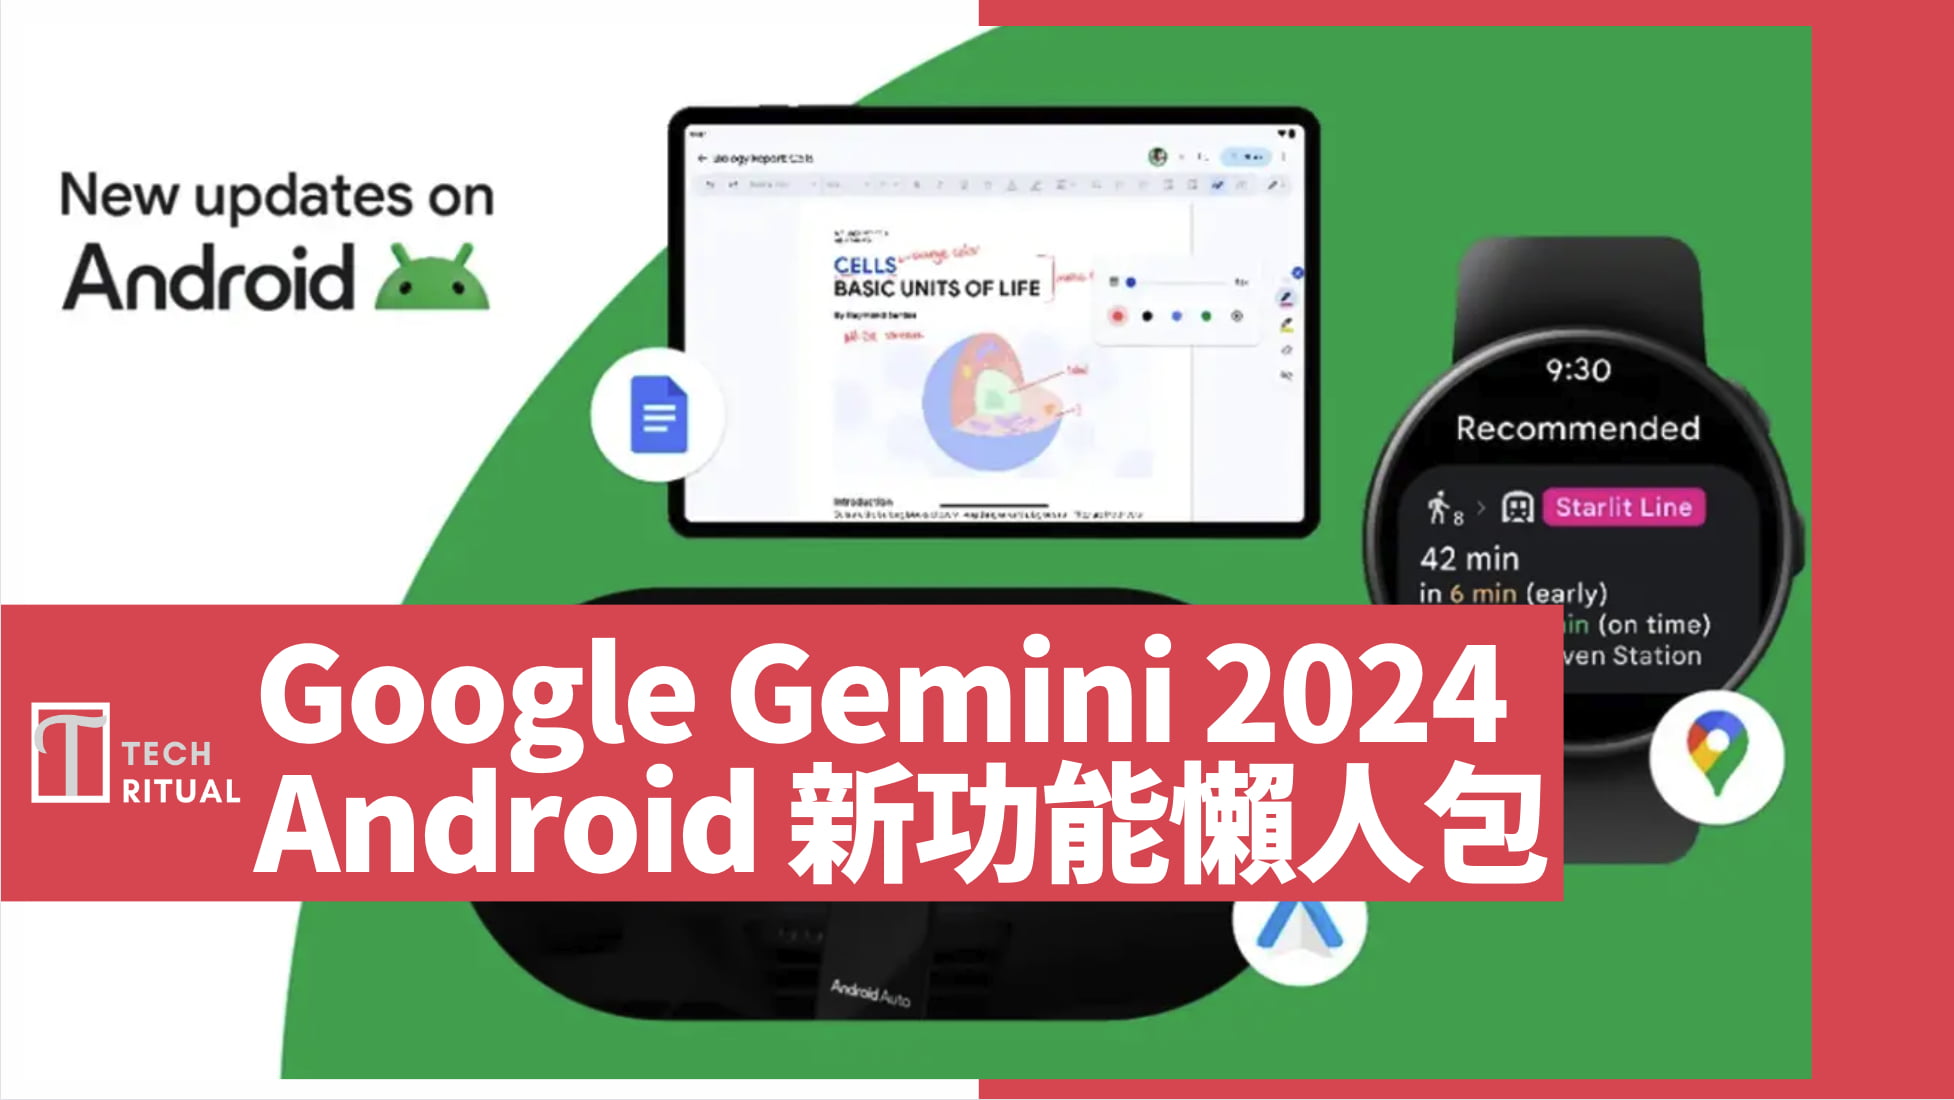 【懶人包】Google Gemini 在 Anrdoid 上將有這些新功能：Messages、Auto